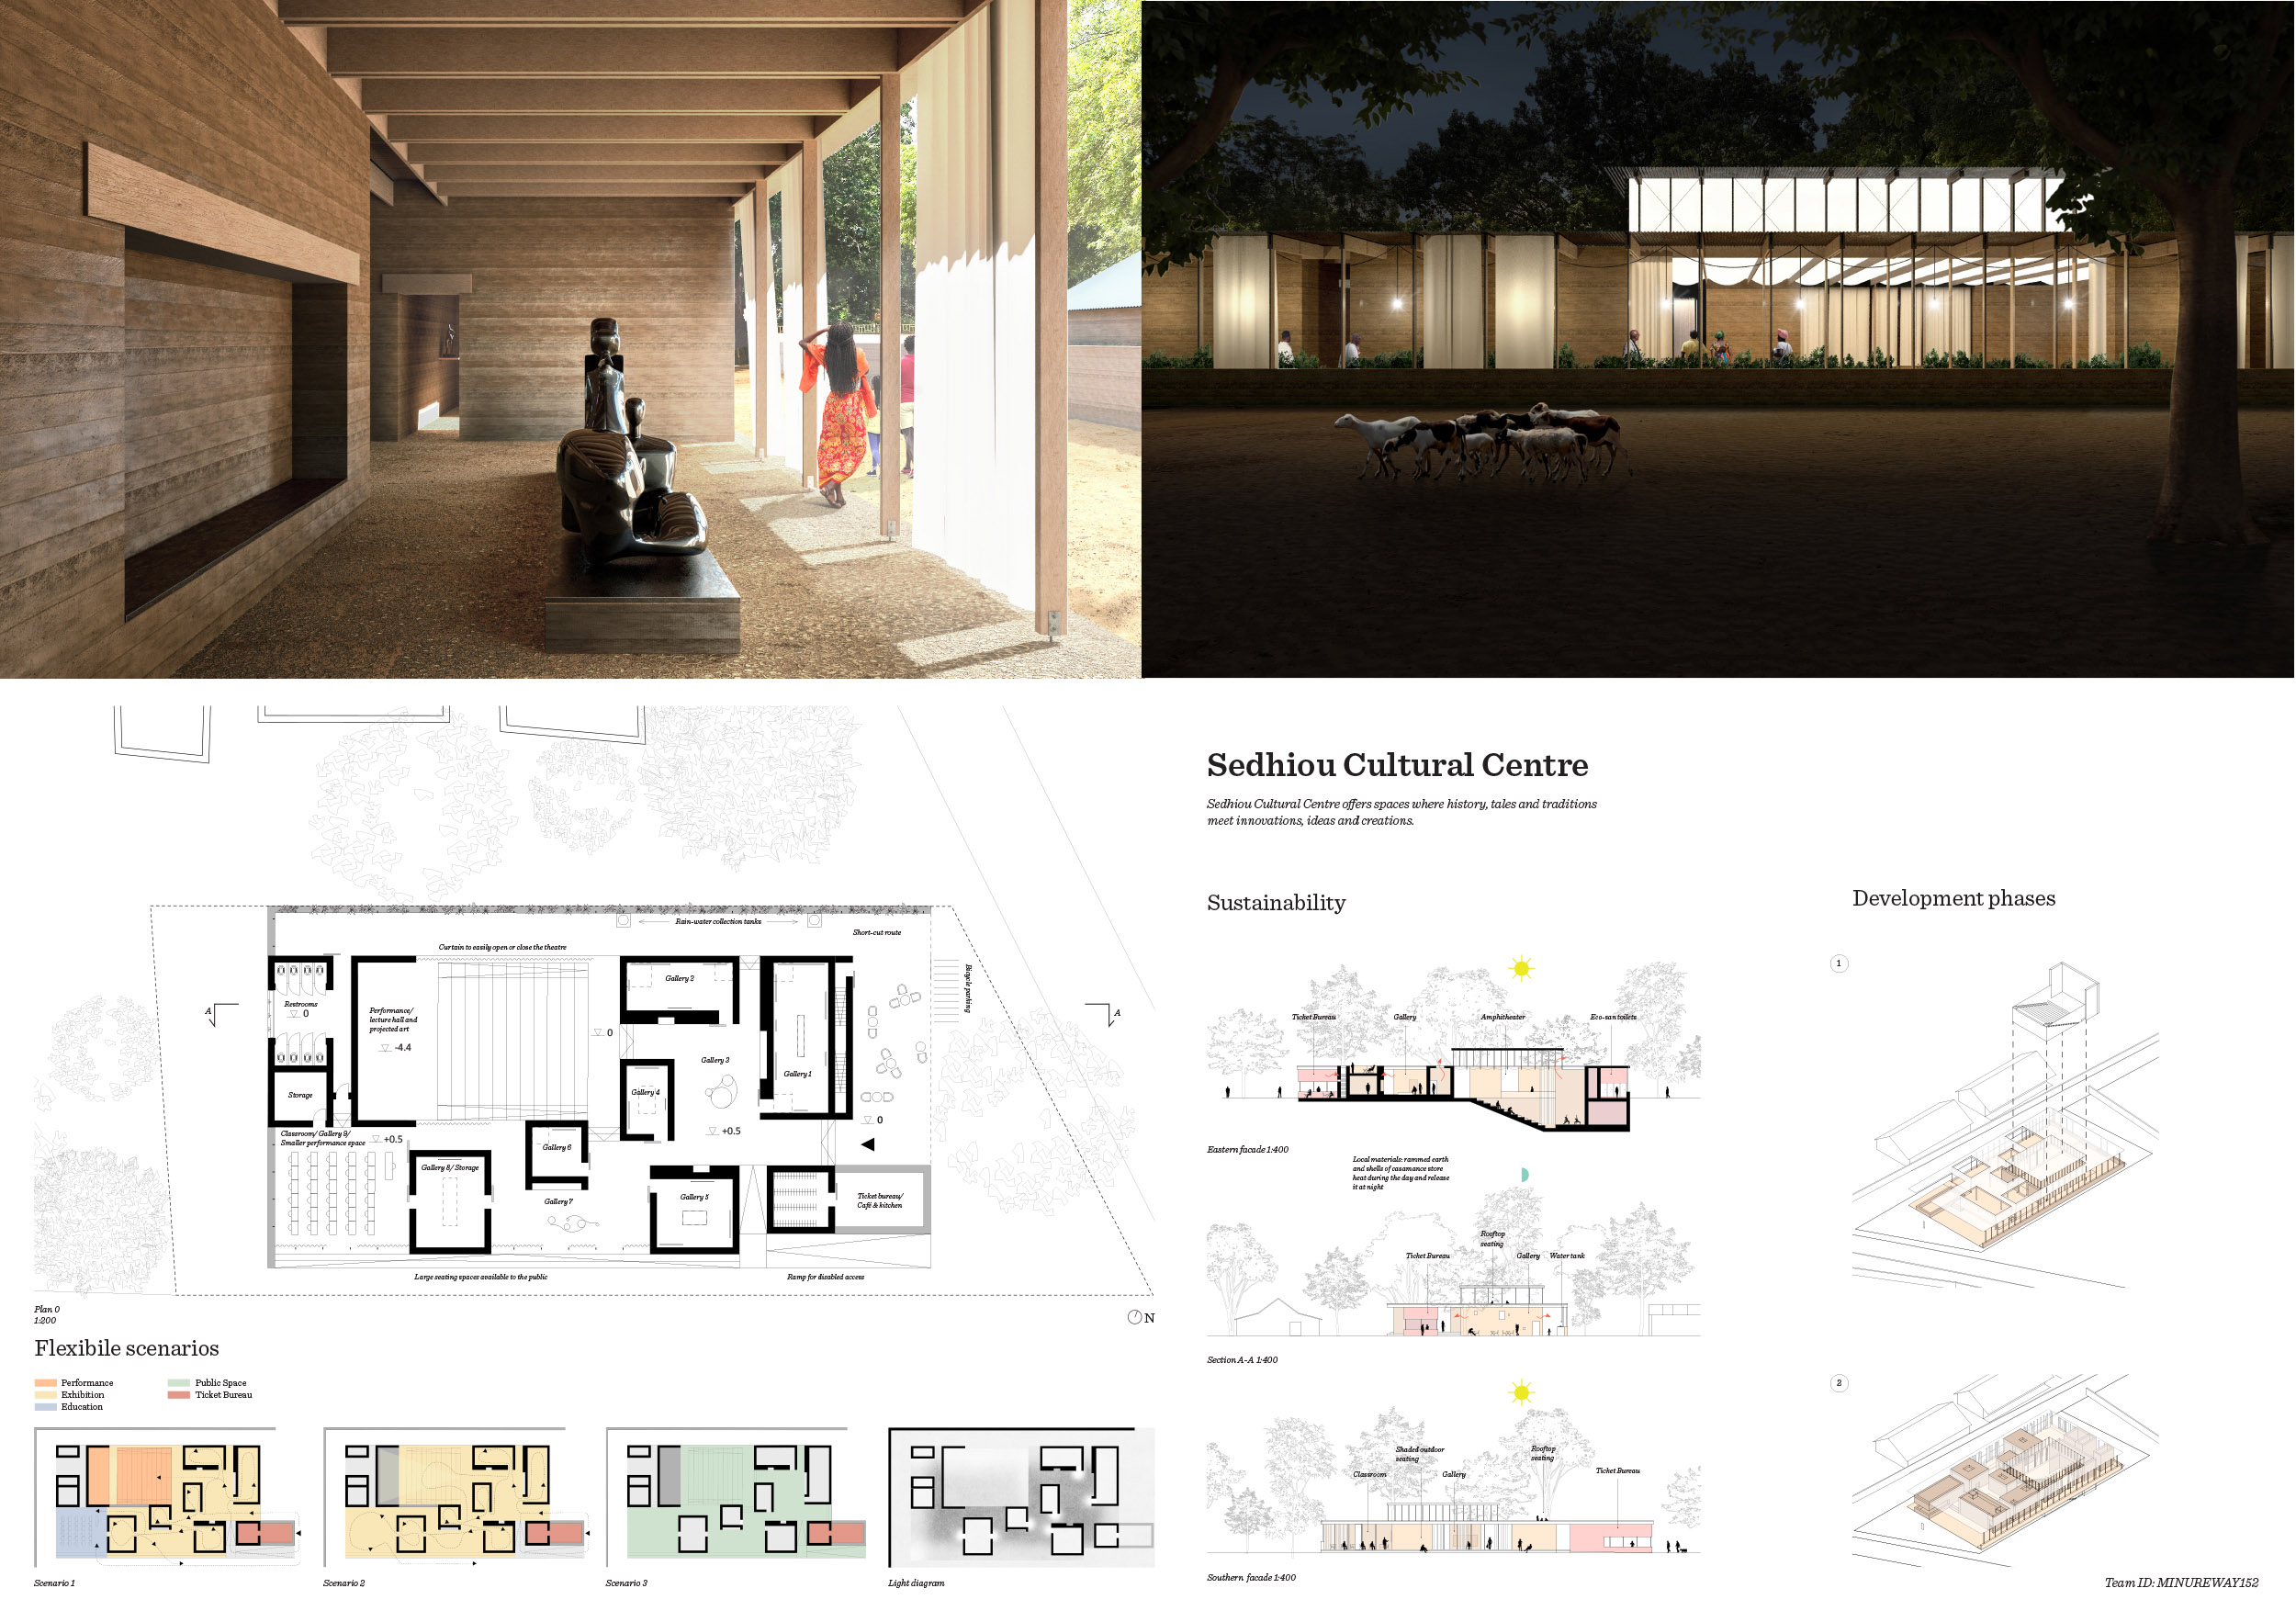 Kaira Looro Architecture Cultural Center Finalist